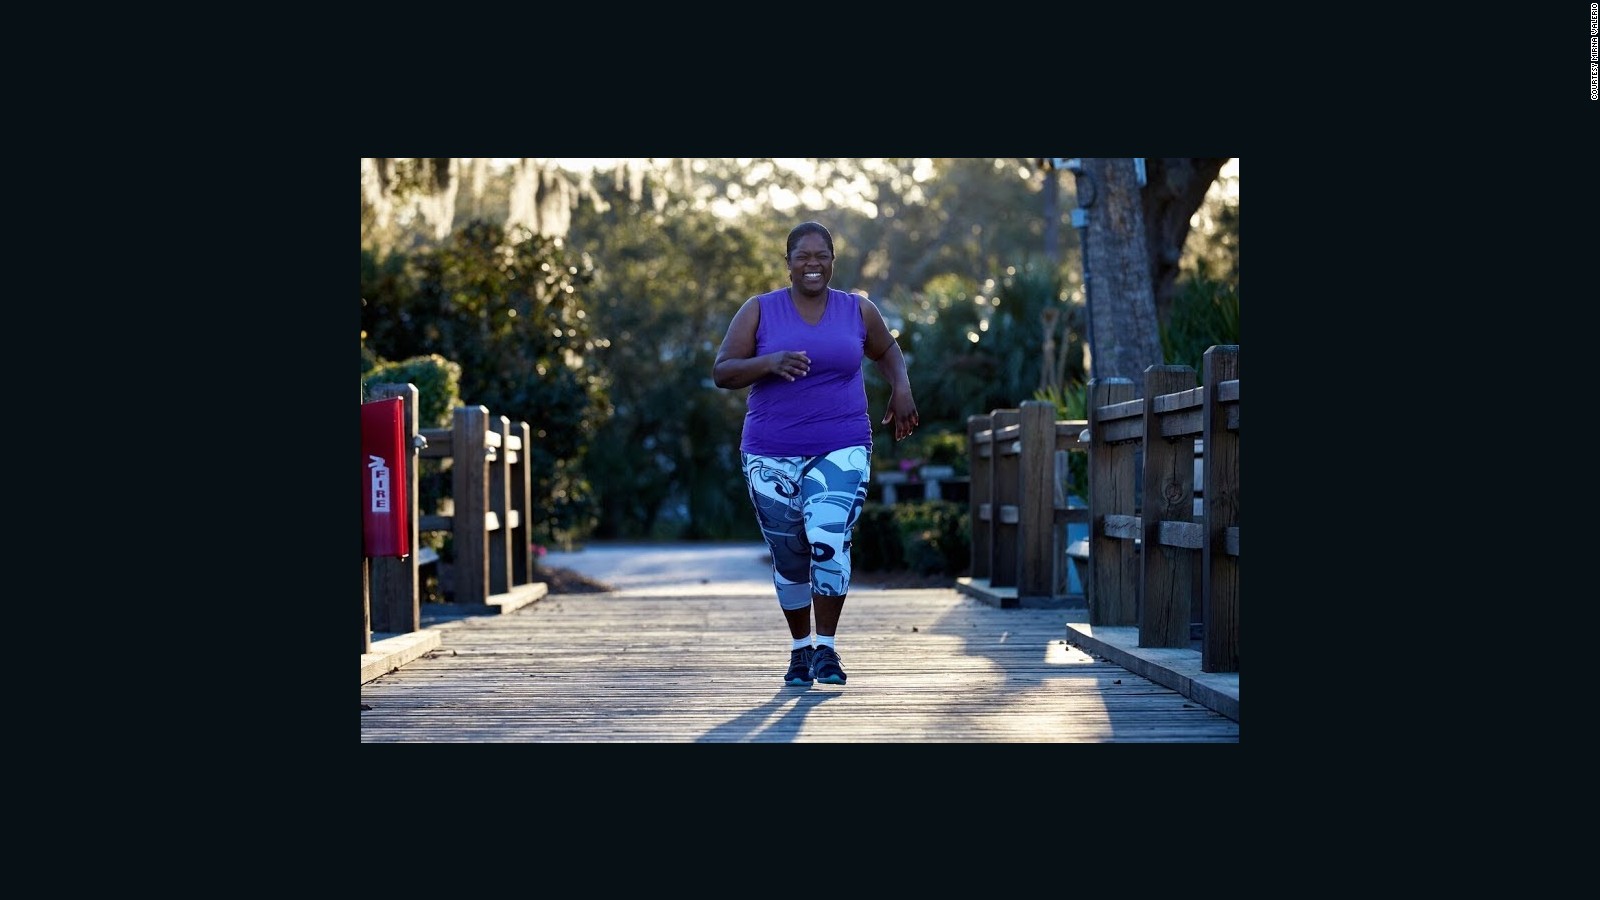 Para los corredores negros, cada zancada viene acompañada de un miedo que no pueden superar